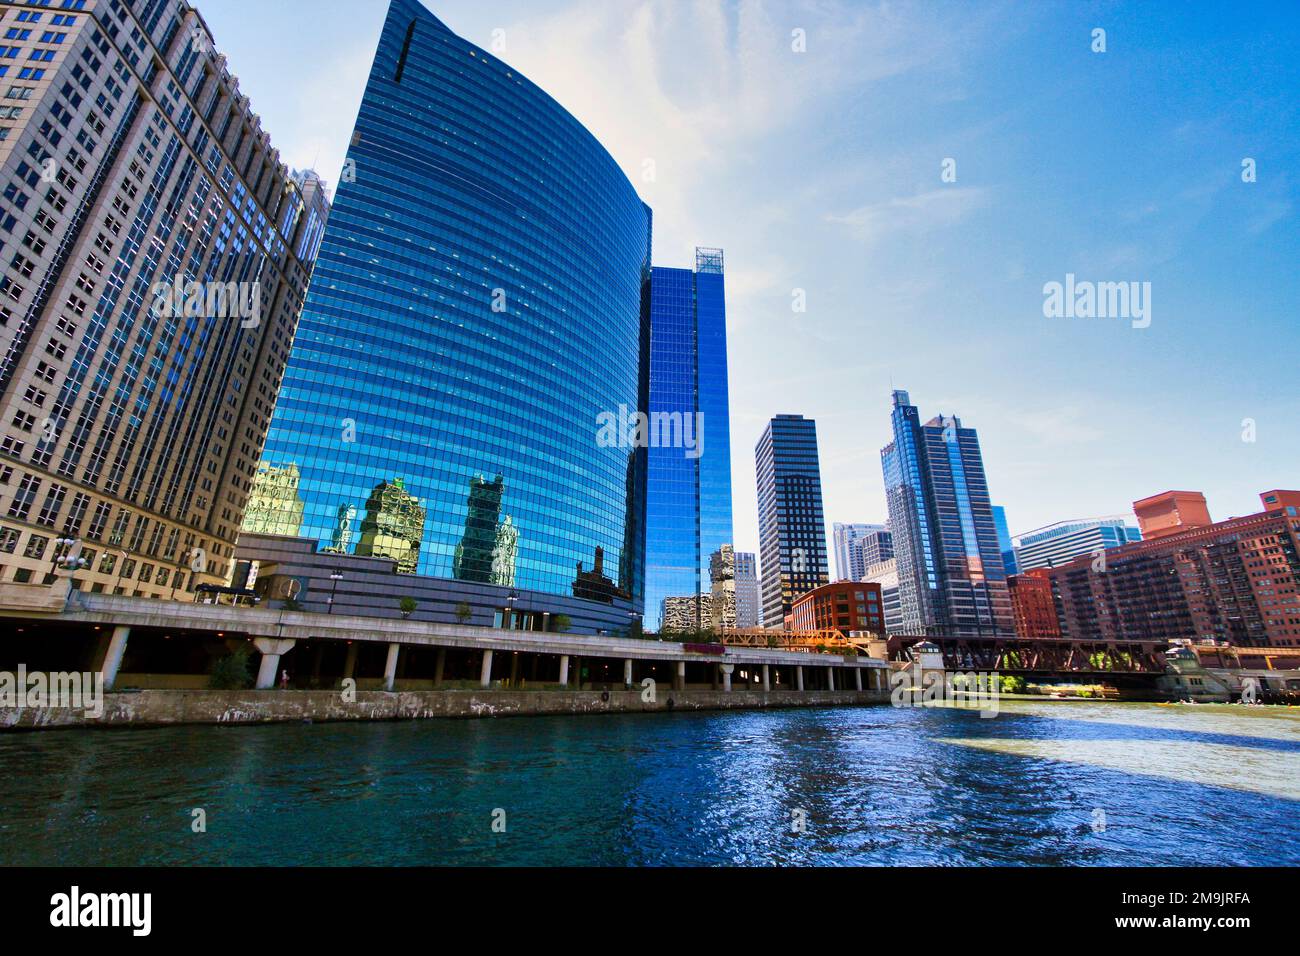 Wacker Drive le long de la rivière Chicago, Chicago, Illinois, États-Unis Banque D'Images